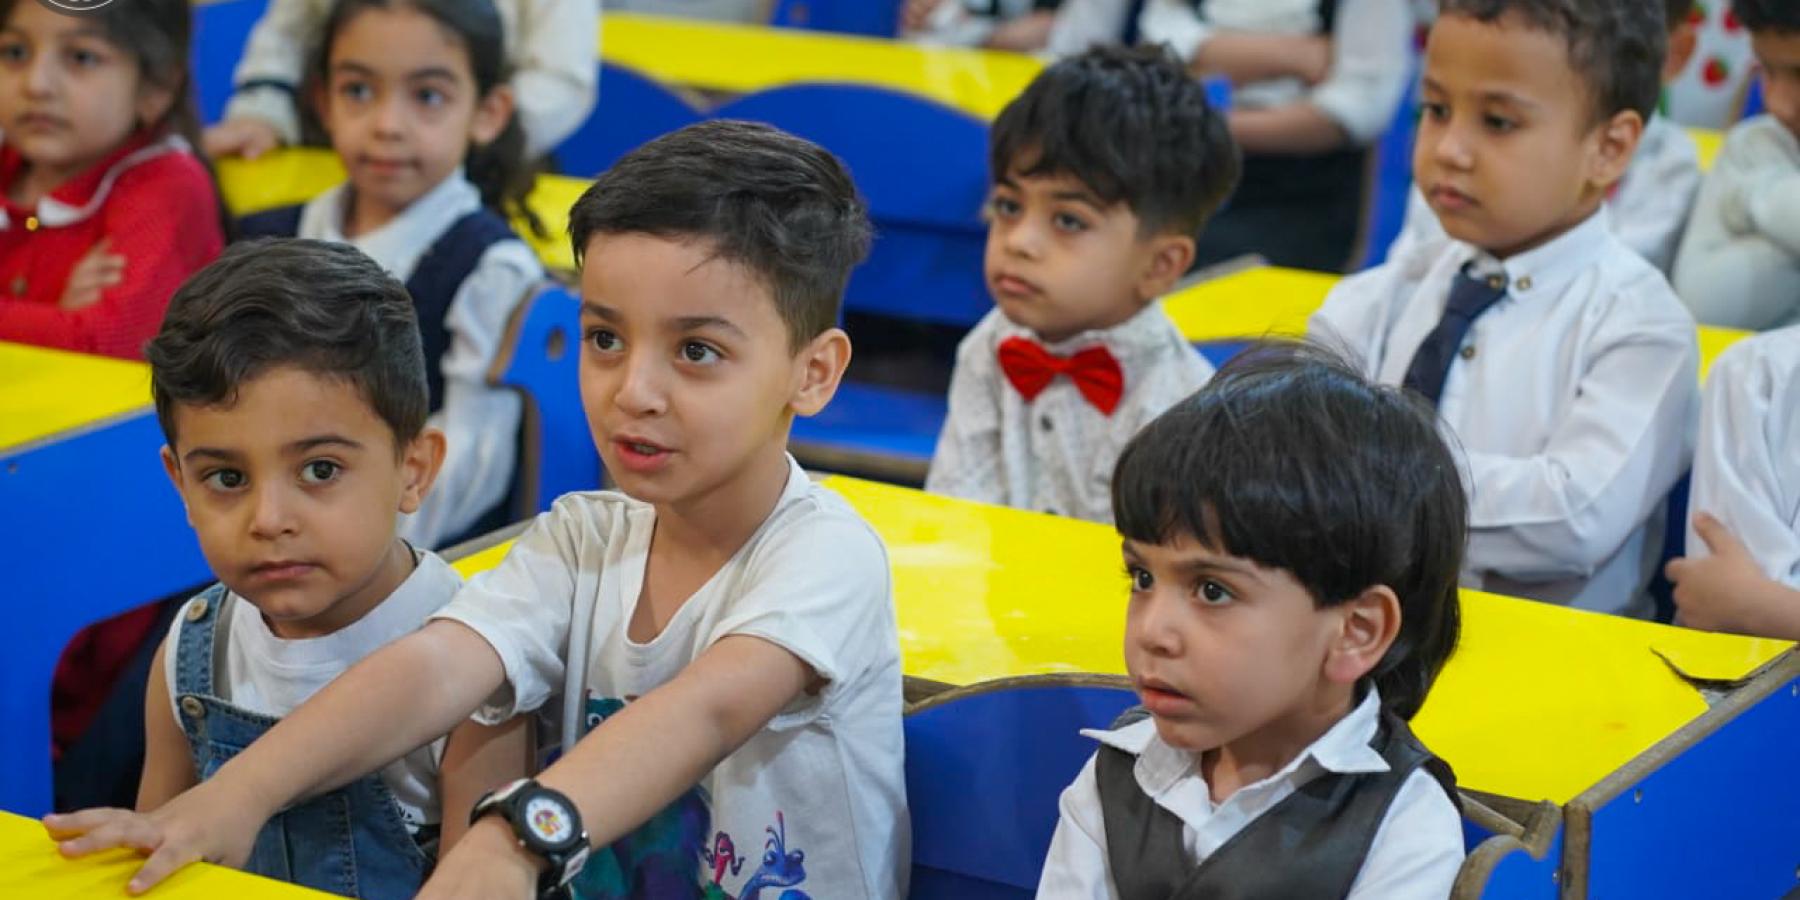 روضة أحباب الأمير(ع) في العتبة العلوية تقيم برنامجًا إذاعيًّا ثقافيًّا للطفل بالتعاون مع قسم الإعلام 